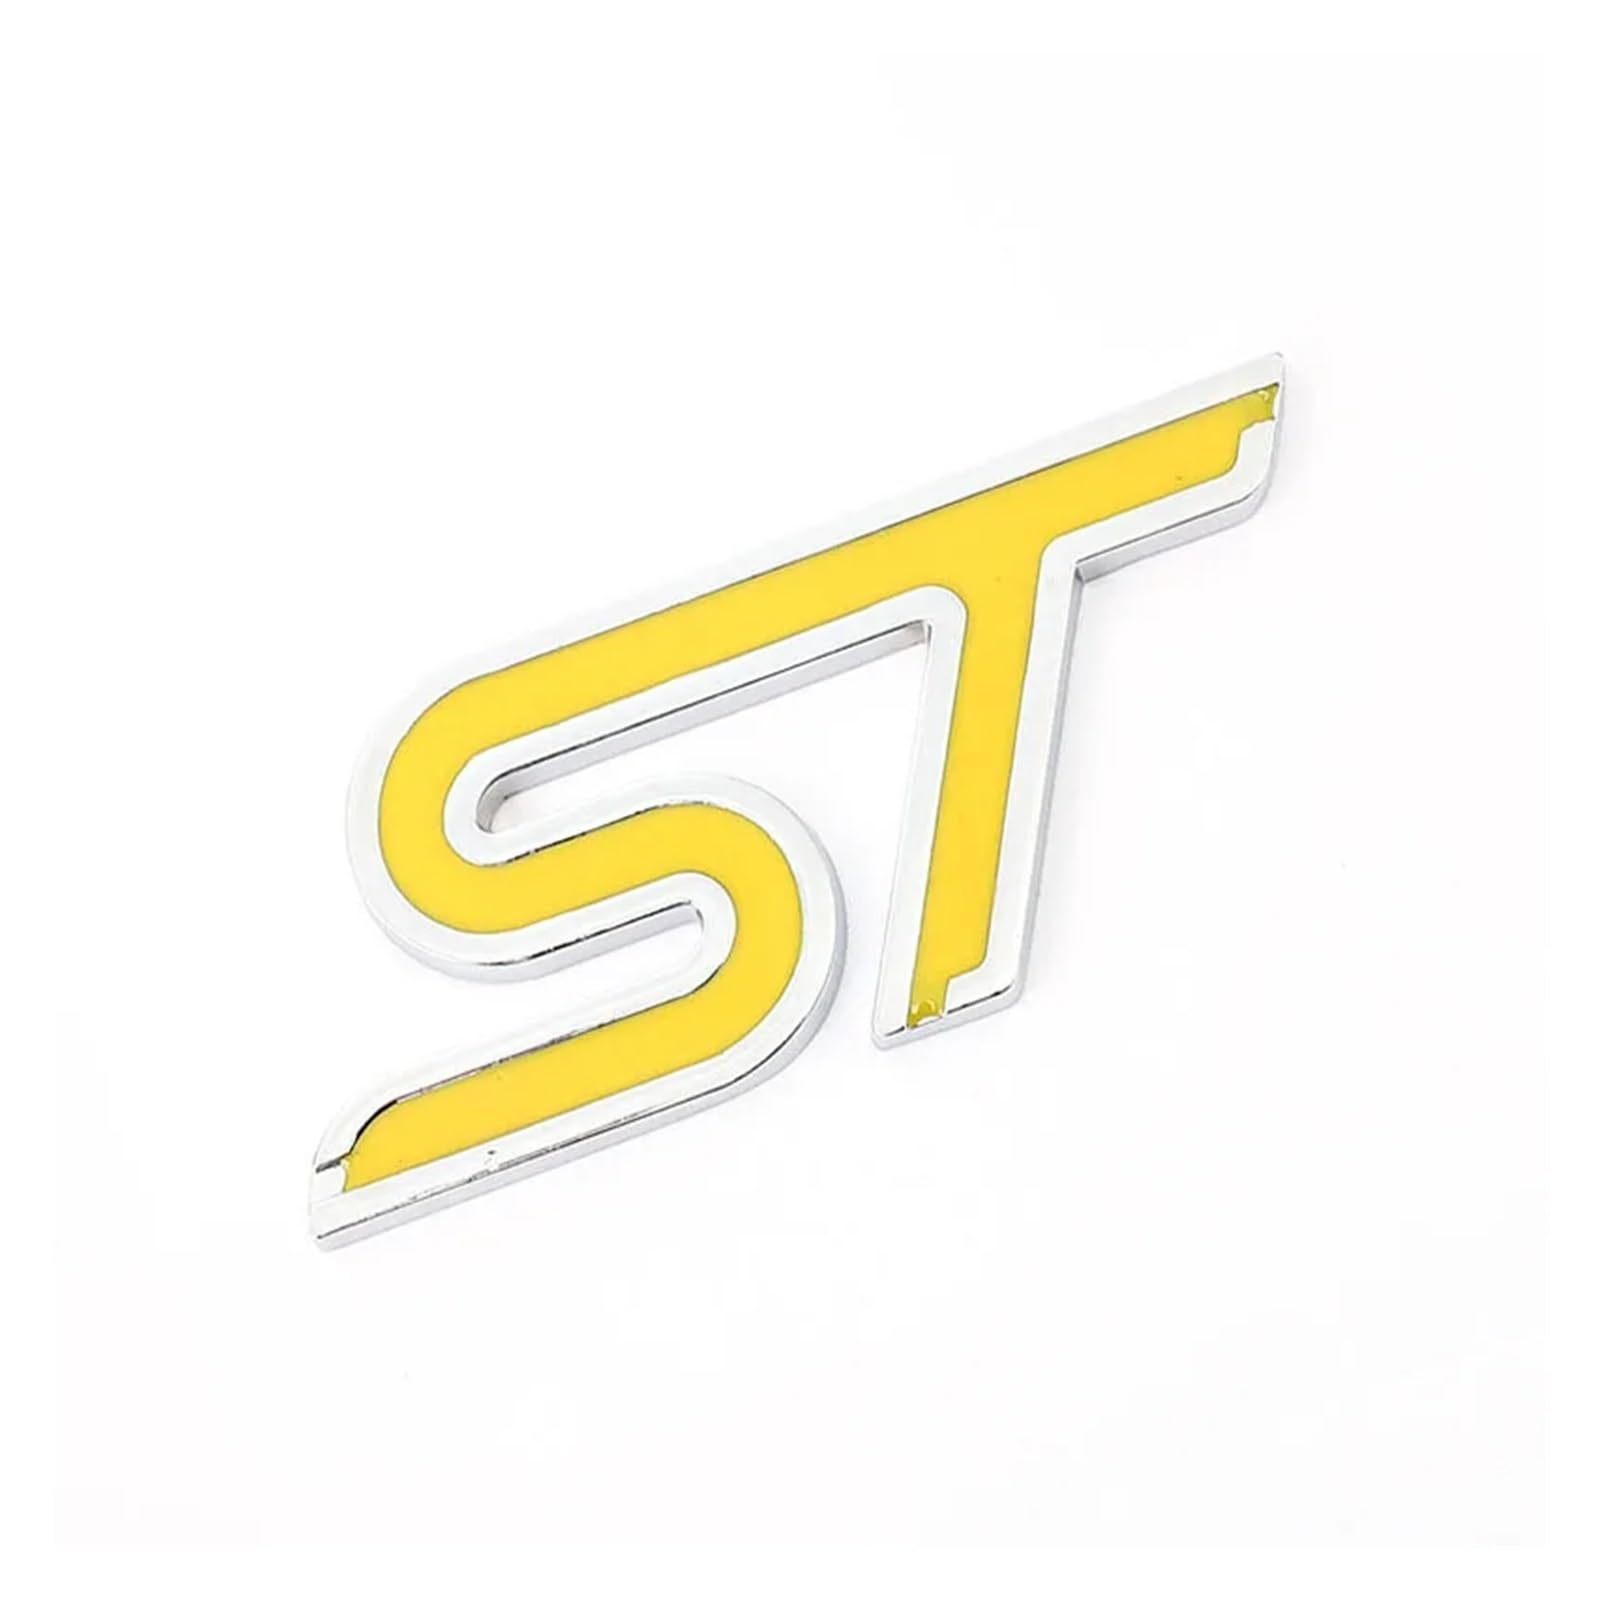 AQXYWQOL Exquisite Autoaufkleber, Frontgrill-Emblem, Auto-Kühlergrill-Abzeichen, kompatibel mit Focus ST Fiesta Ecosport 2009–2015 Mondeo, Auto-Styling Farbe ist konstant, verblasst nicht und beschädi von AQXYWQOL